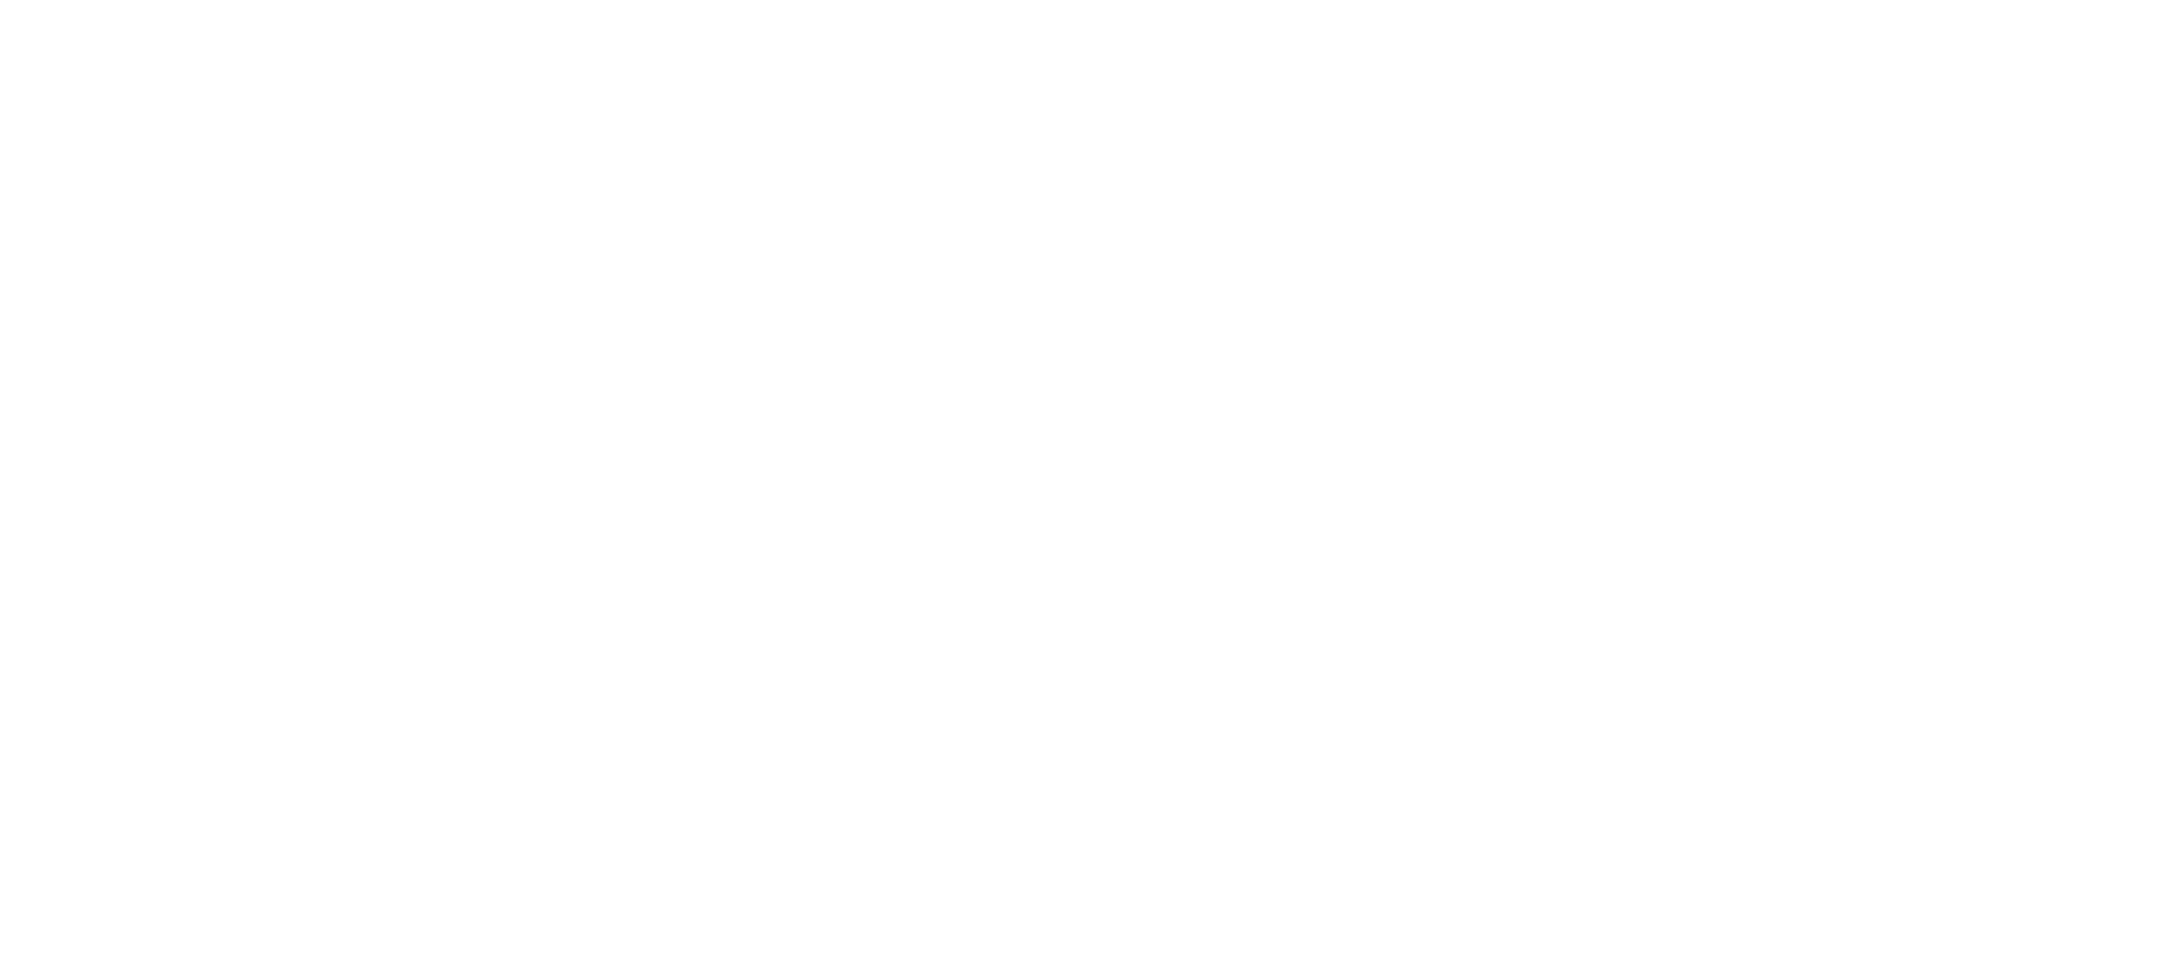 Best Car Deal